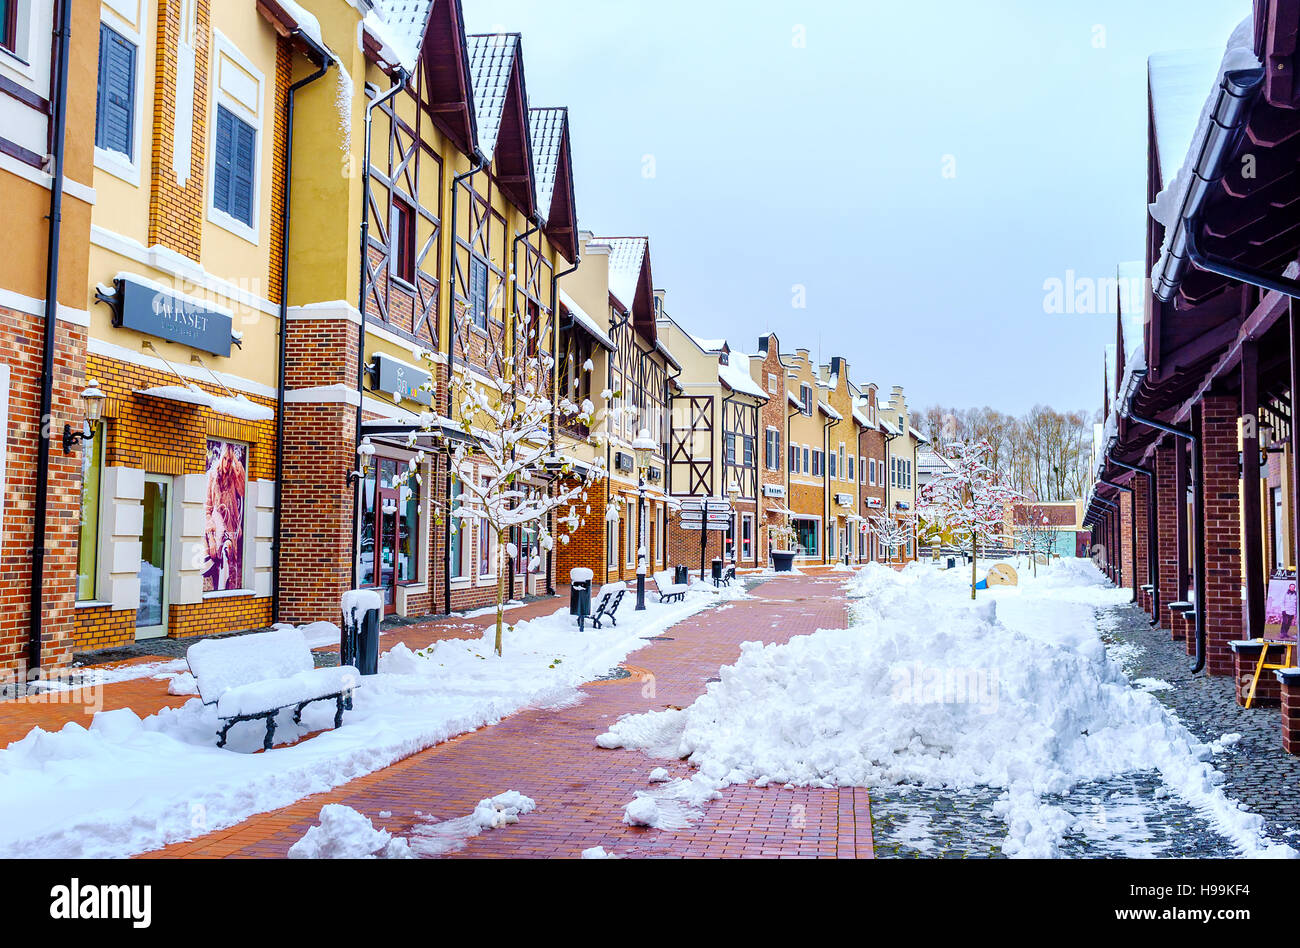 Stile olandese shopping city in snow sembra pronto per la fiera di Natale, Kiev. Foto Stock